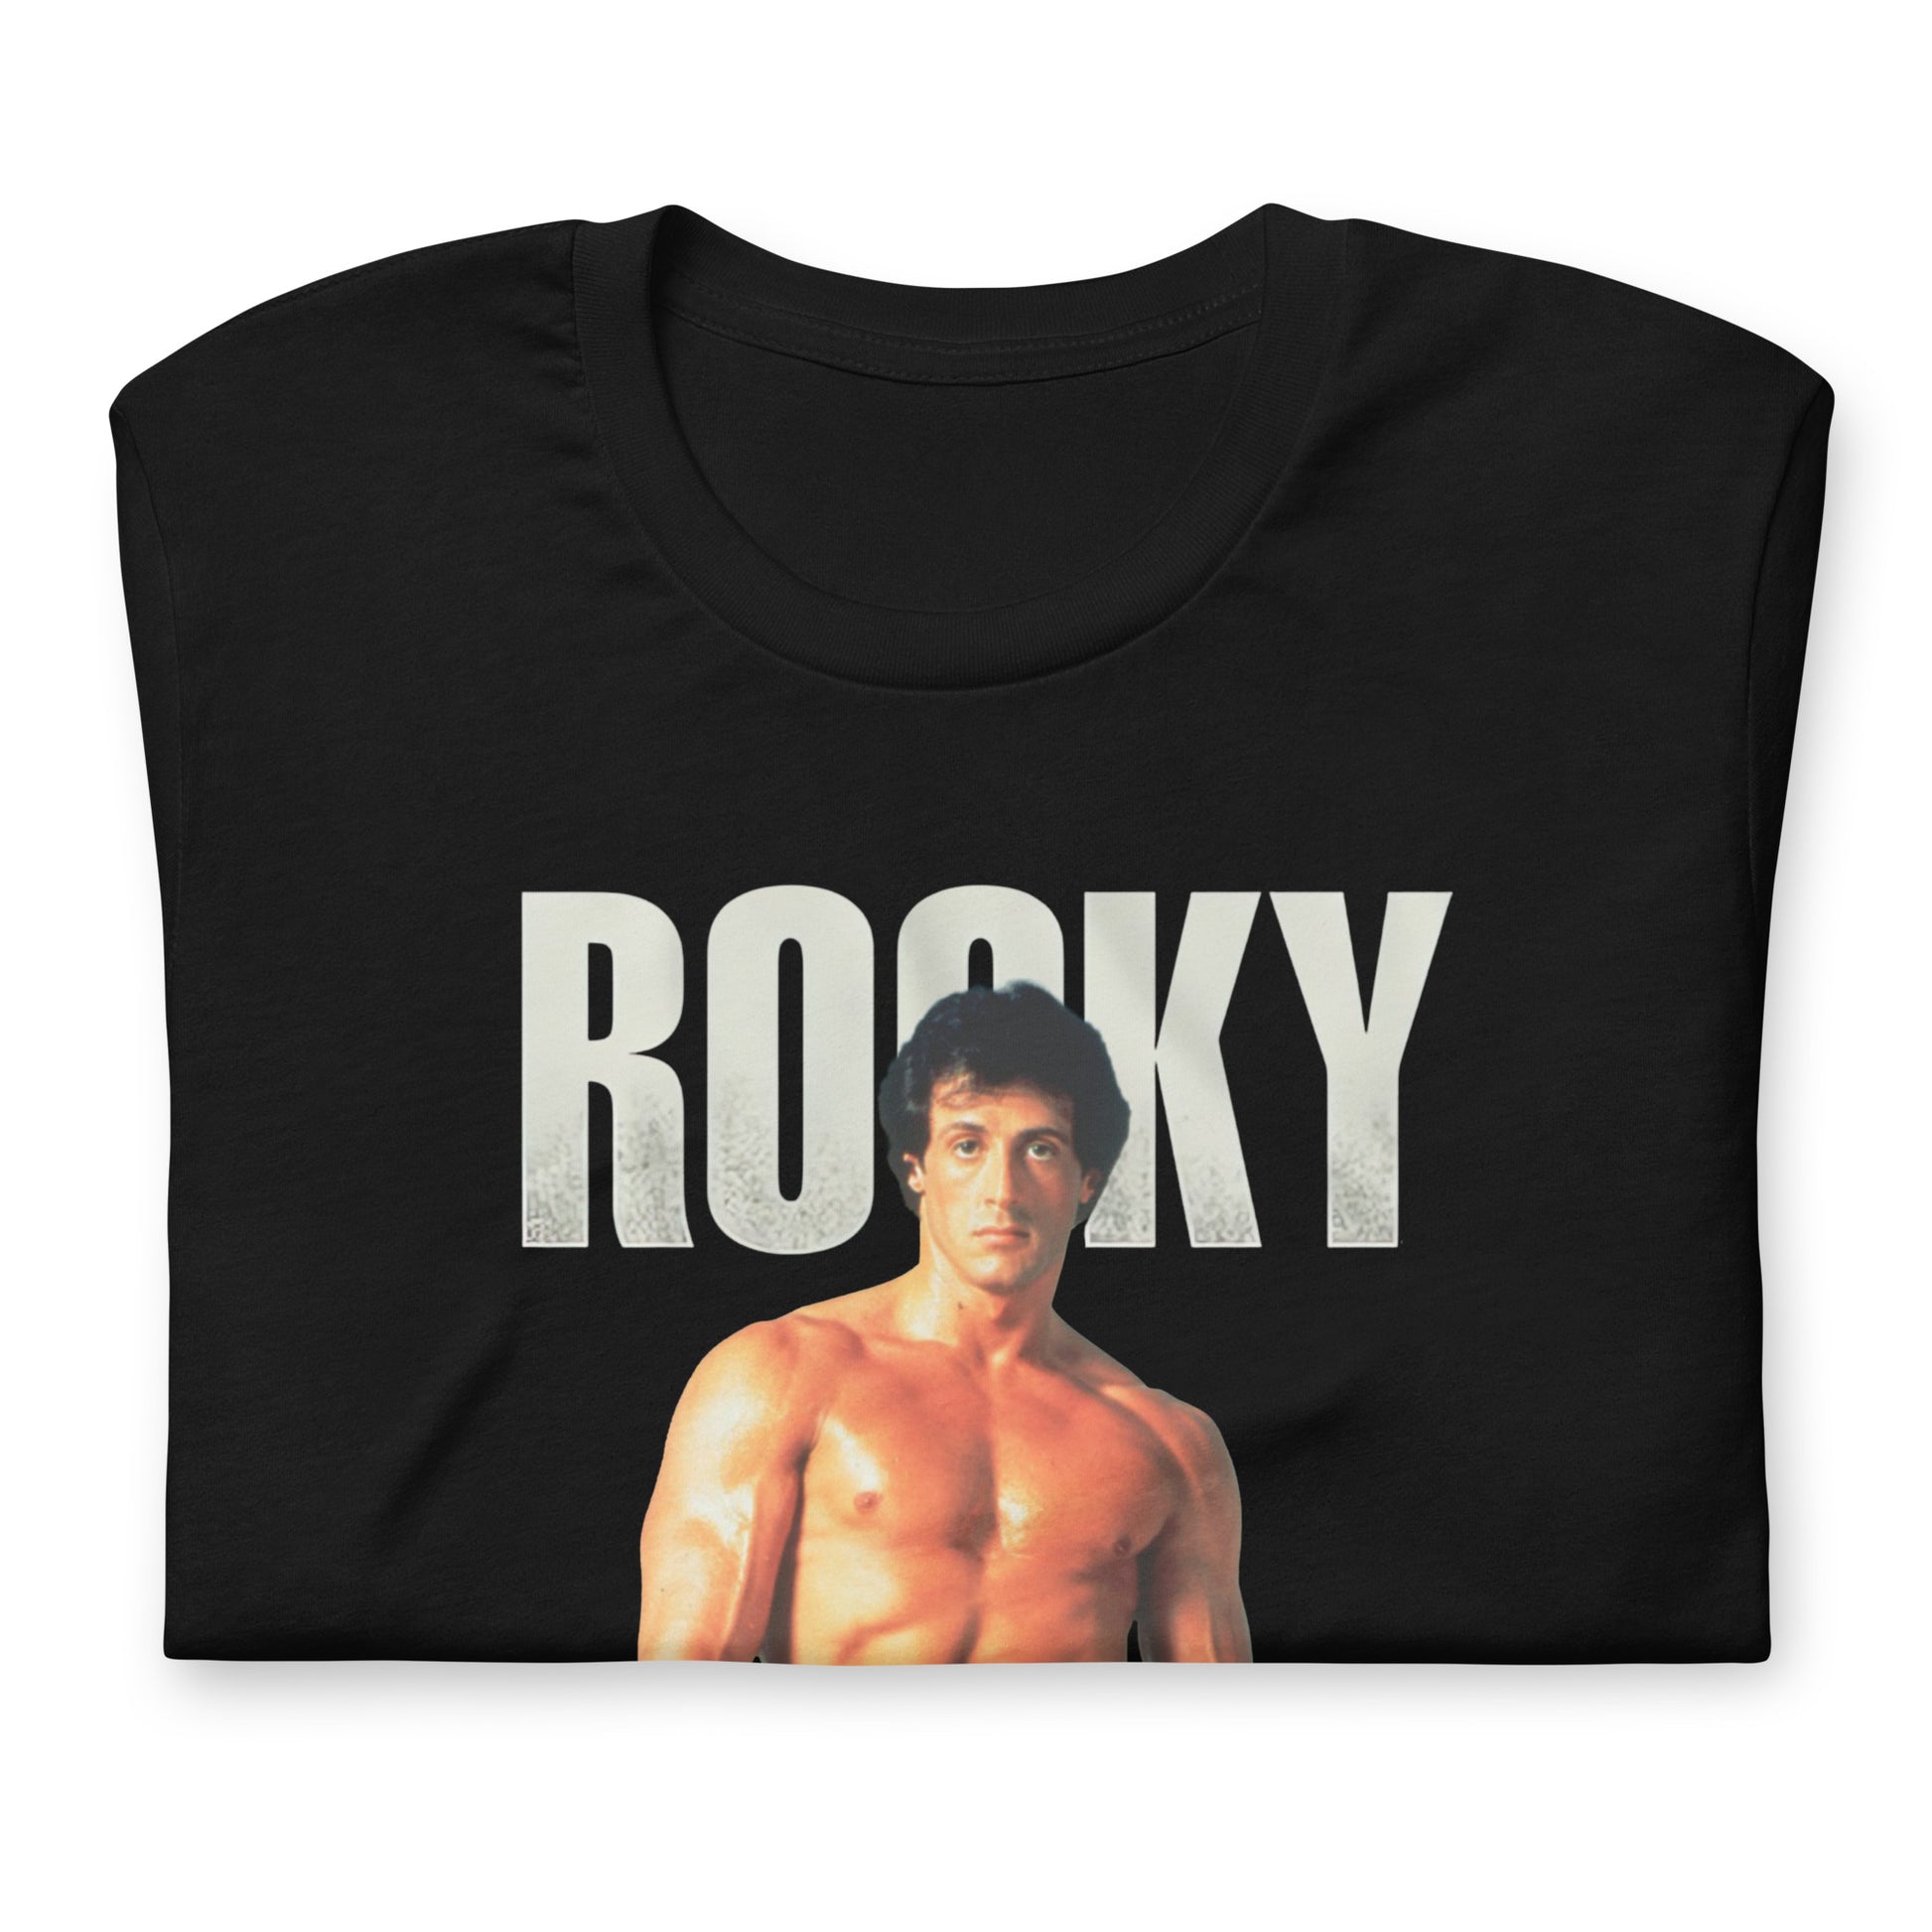 ¡Compra el mejor merchandising en Superstar! Encuentra diseños únicos y de alta calidad en playeras, Playera de Rocky